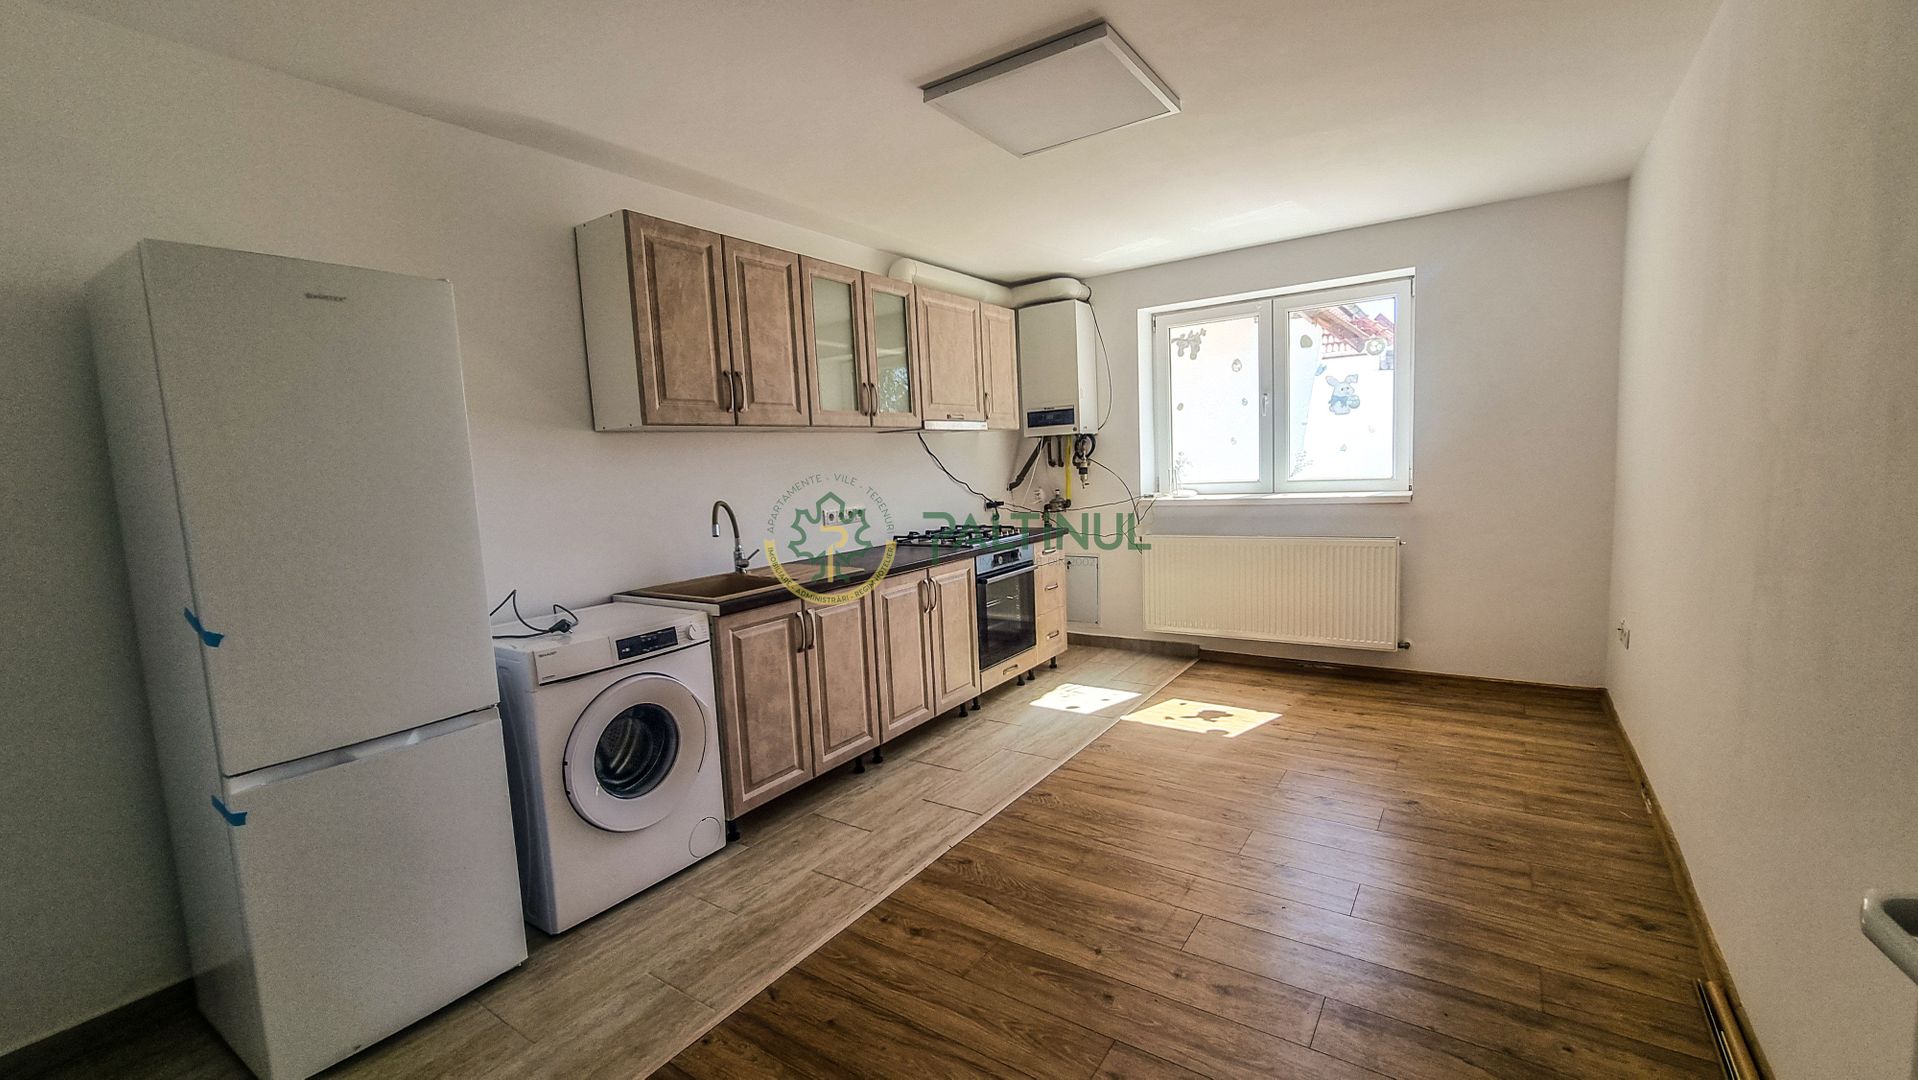 Apartament cu 1 camera Mihai Viteazu – Selimbar